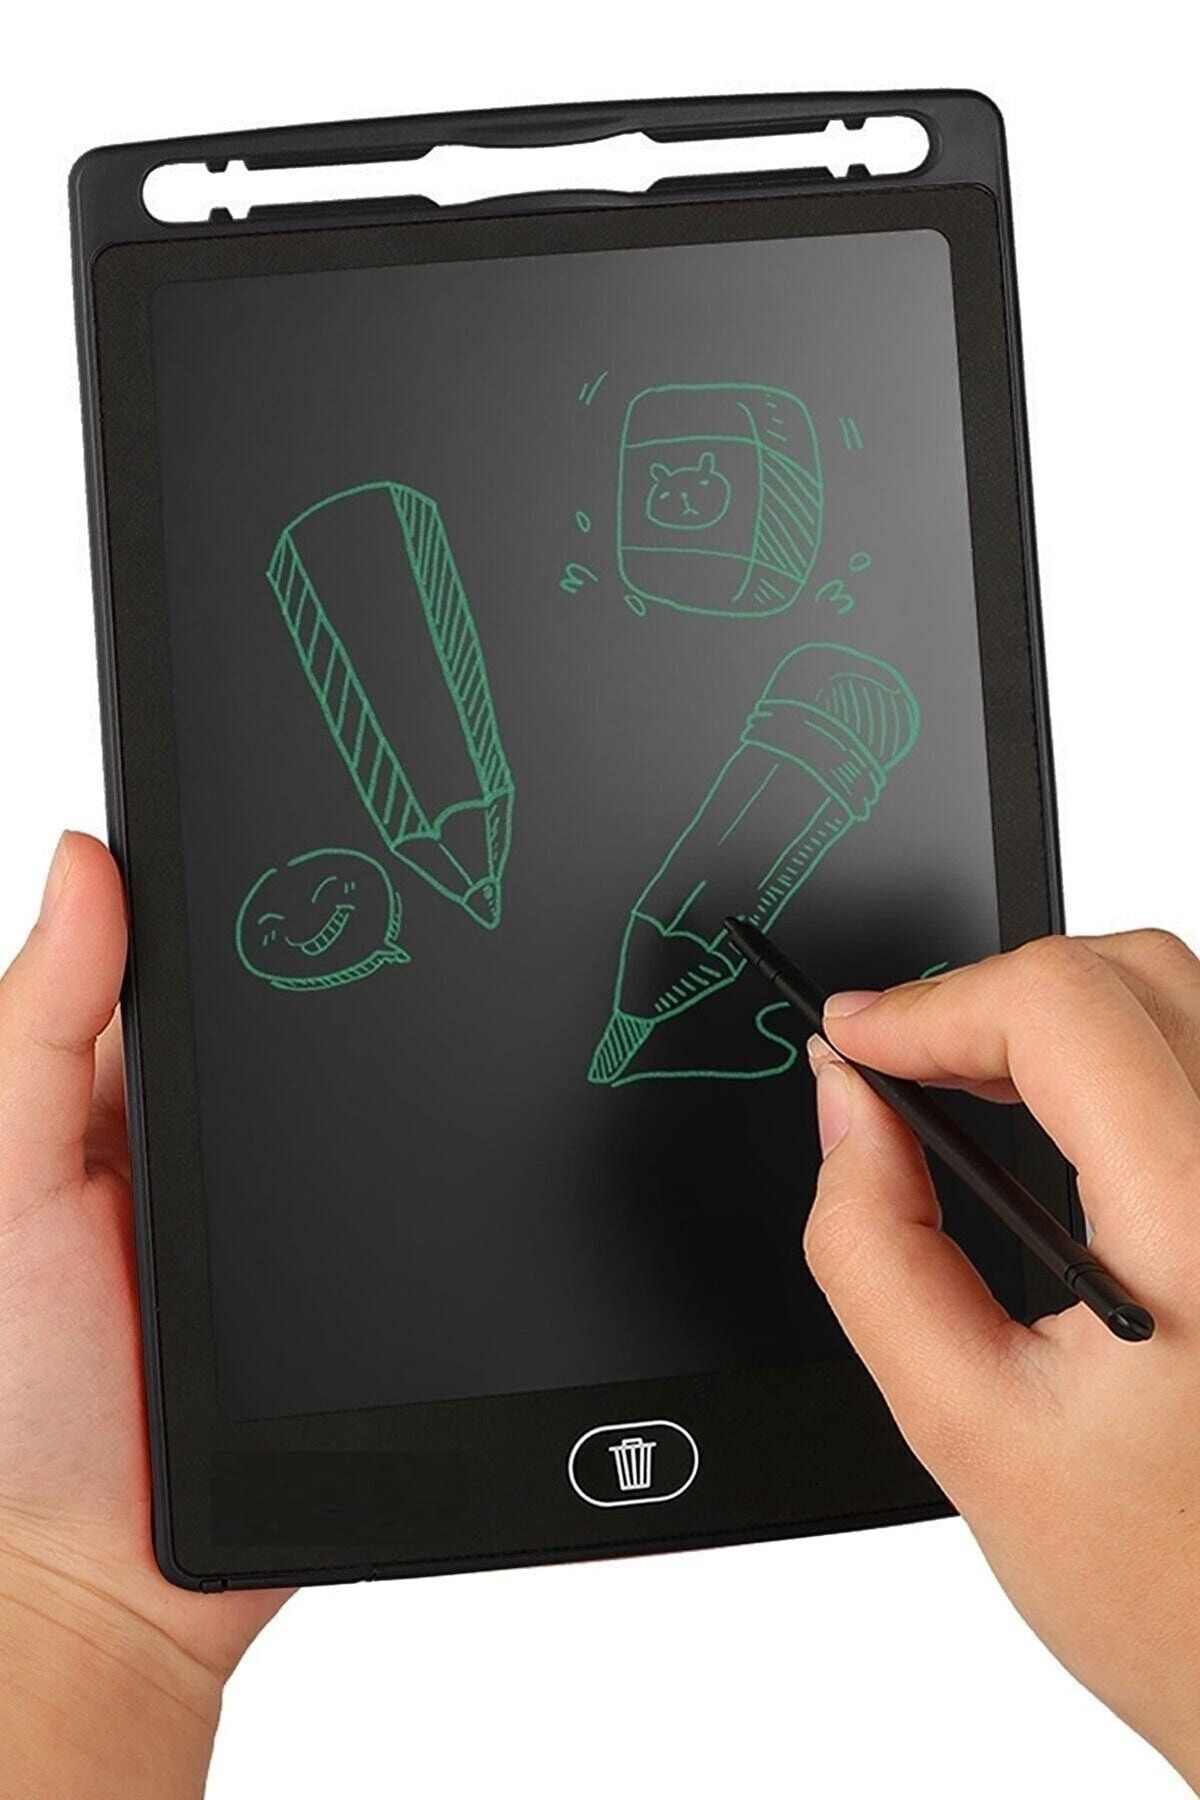 Benefse 1 Adet 8,5 Inç Dijital Kalemli Çizim Yazı Tahtası Not Yazma Eğitim Tableti Writing Tablet Tablet